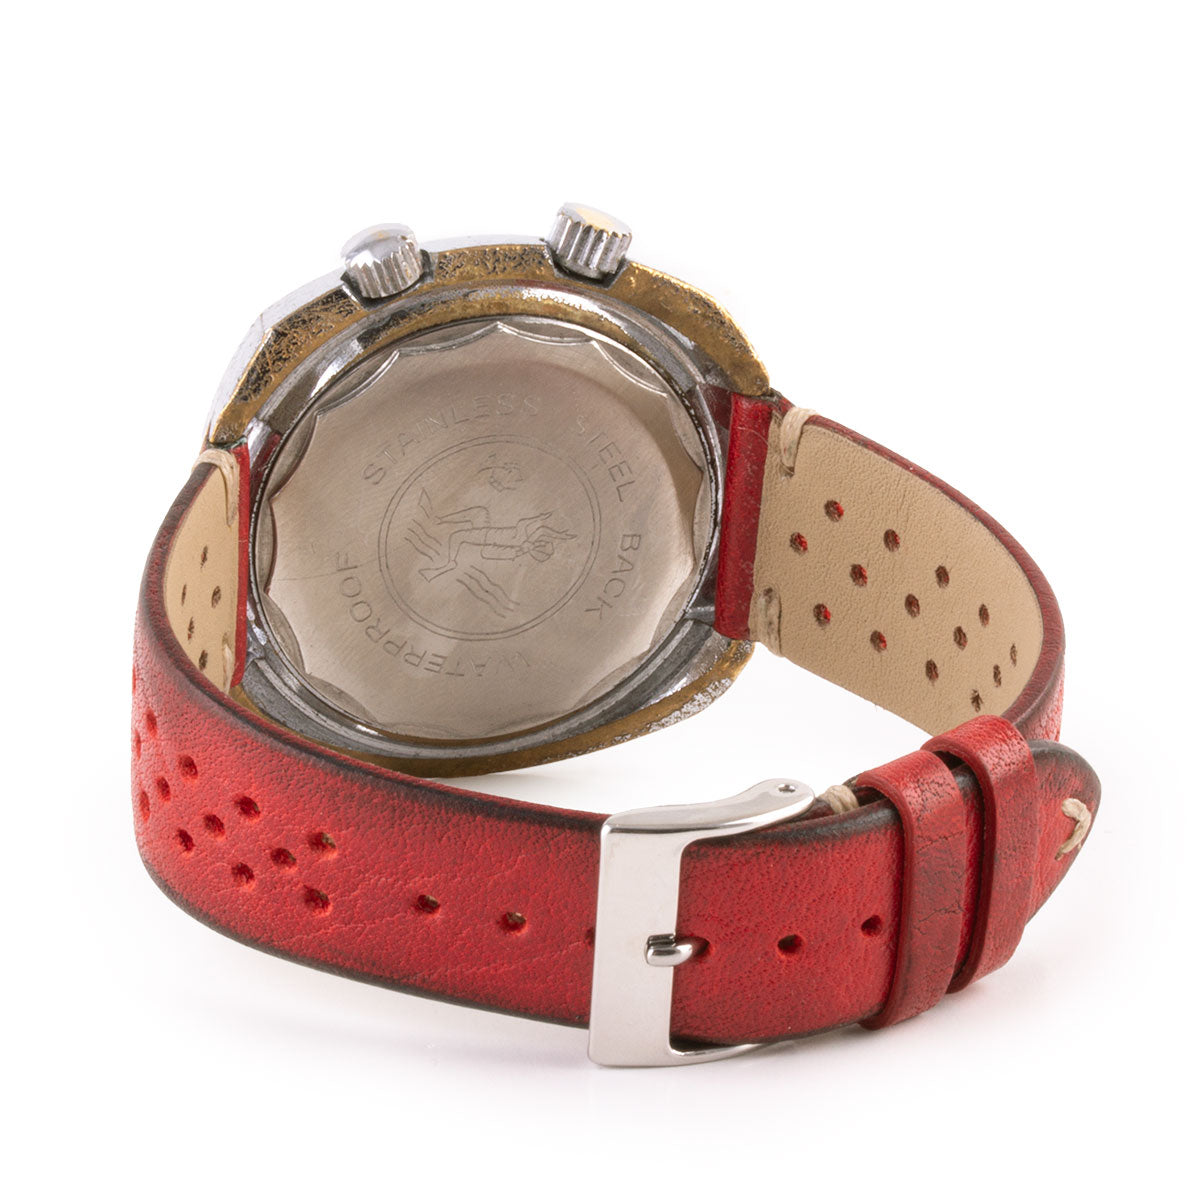 Second-hand watch - Chilex - 950€